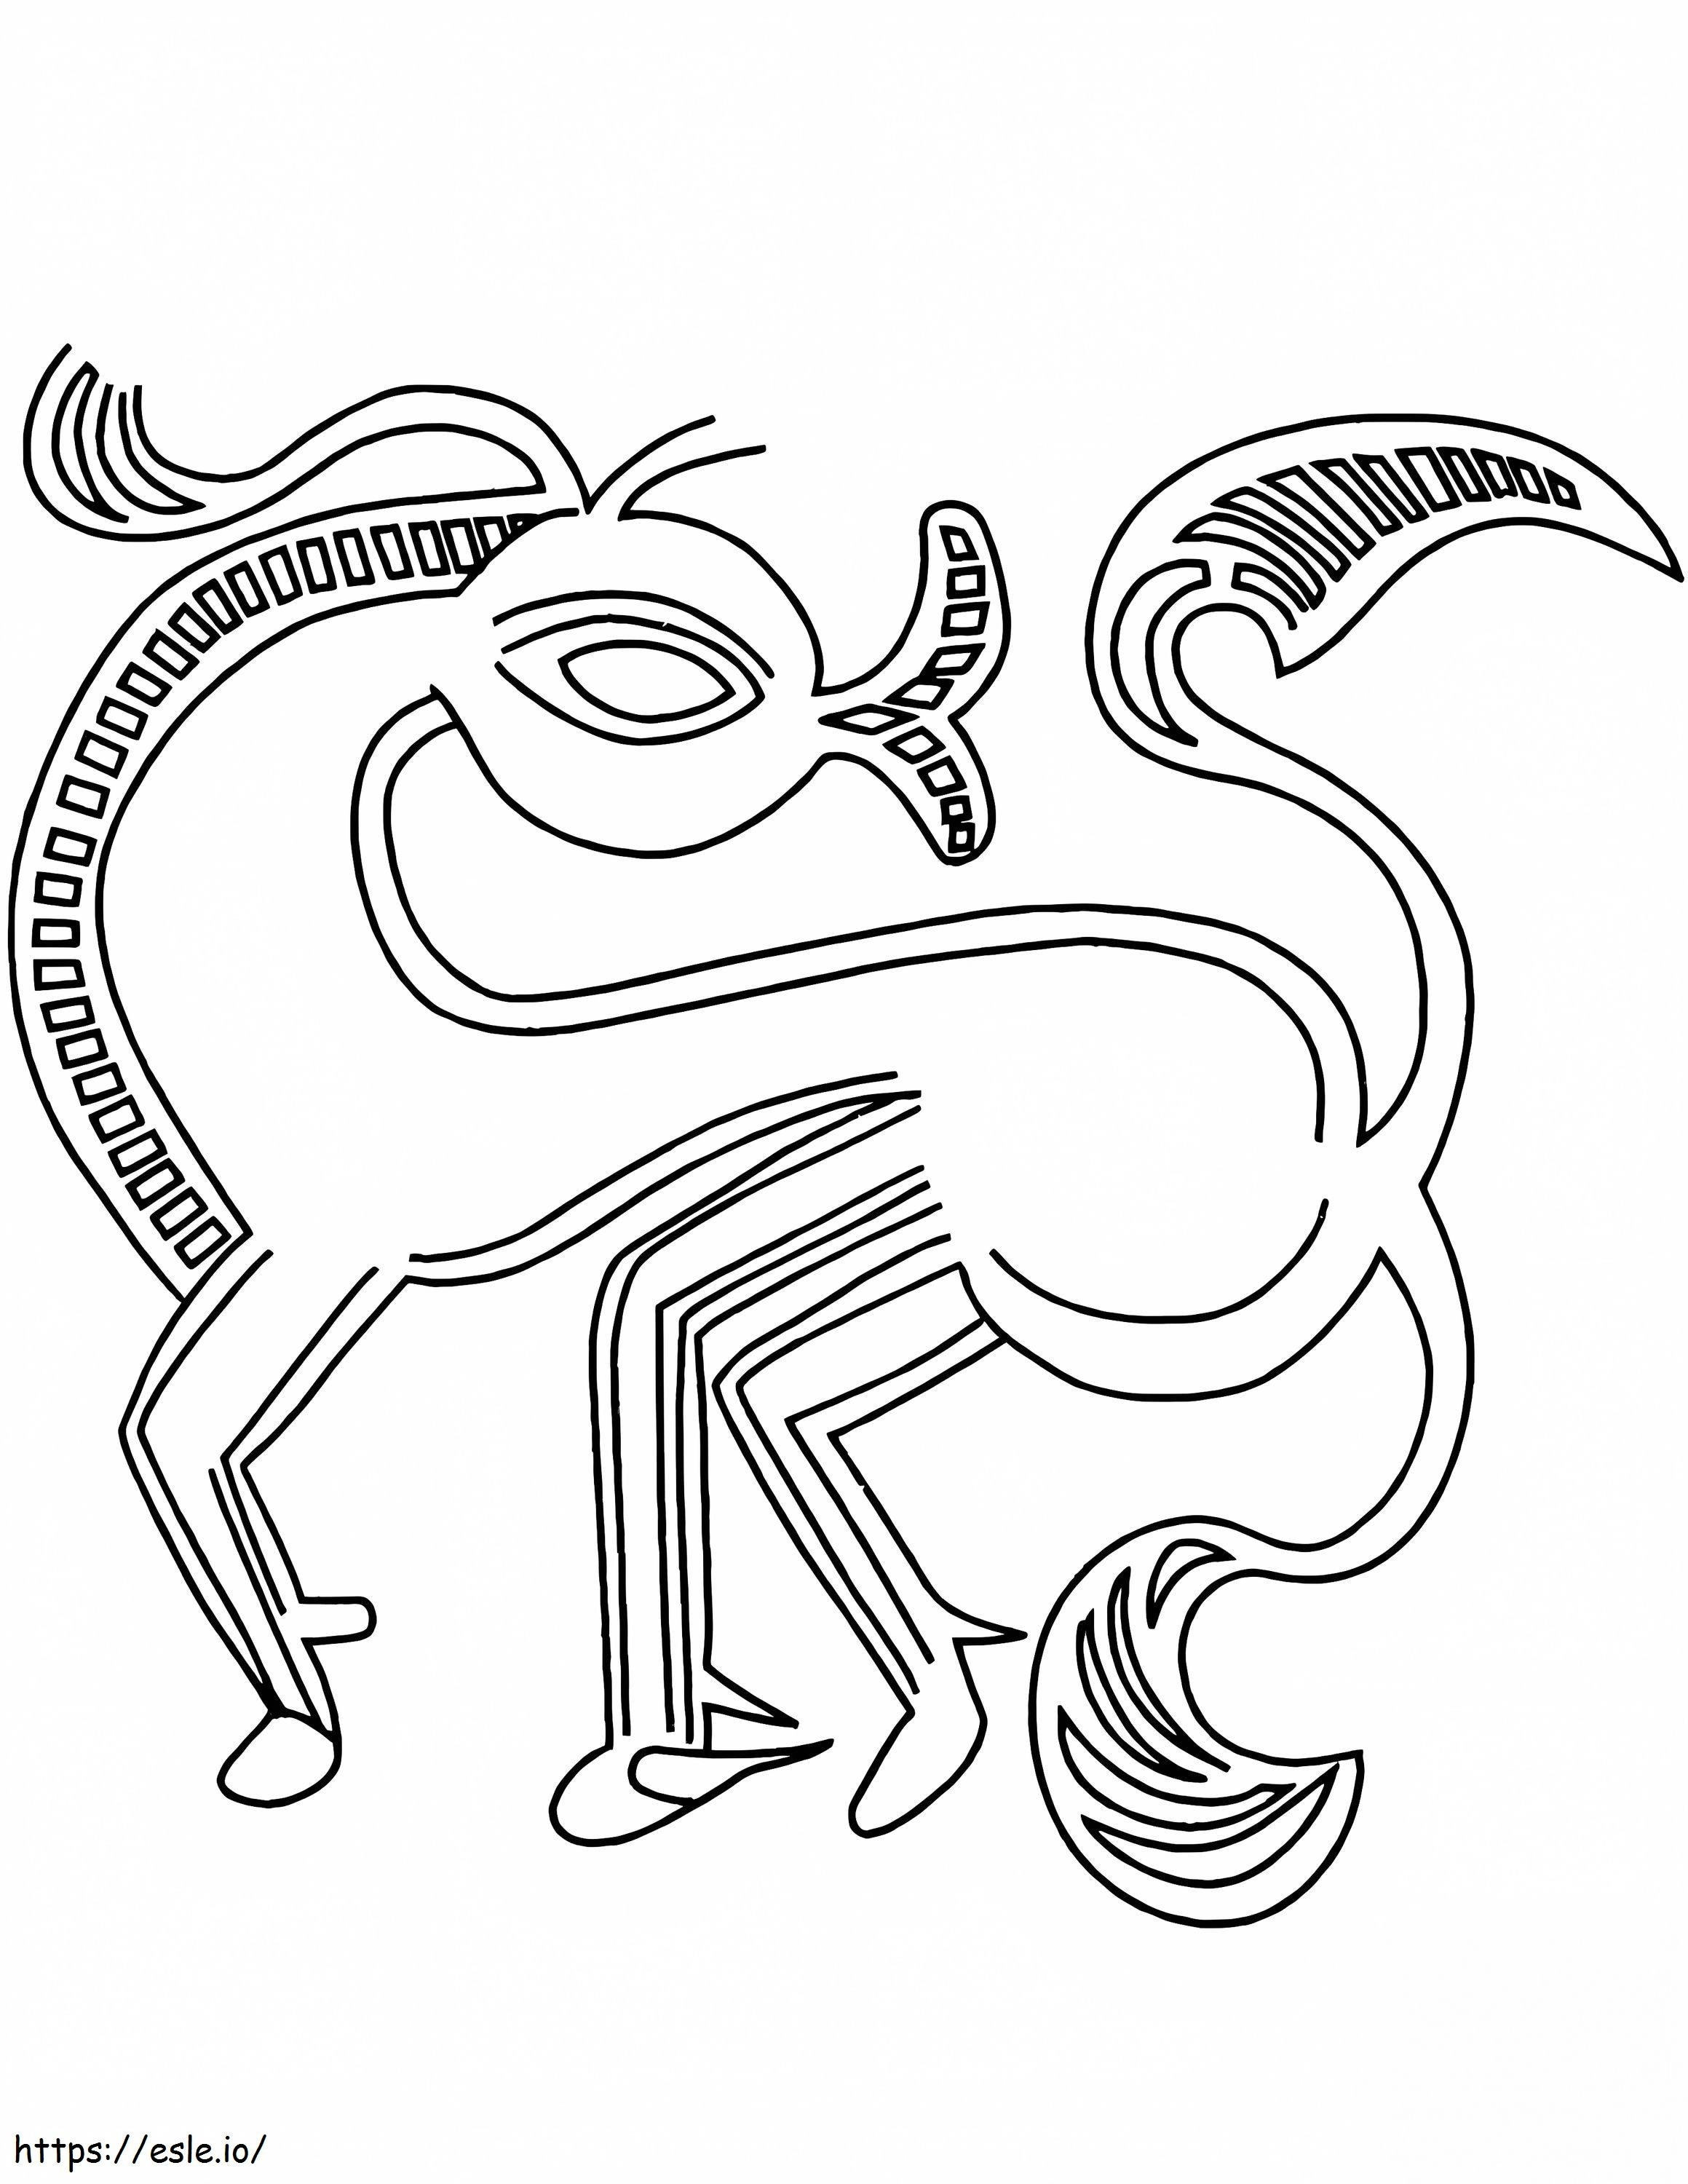 Diseño de caballo celta para colorear